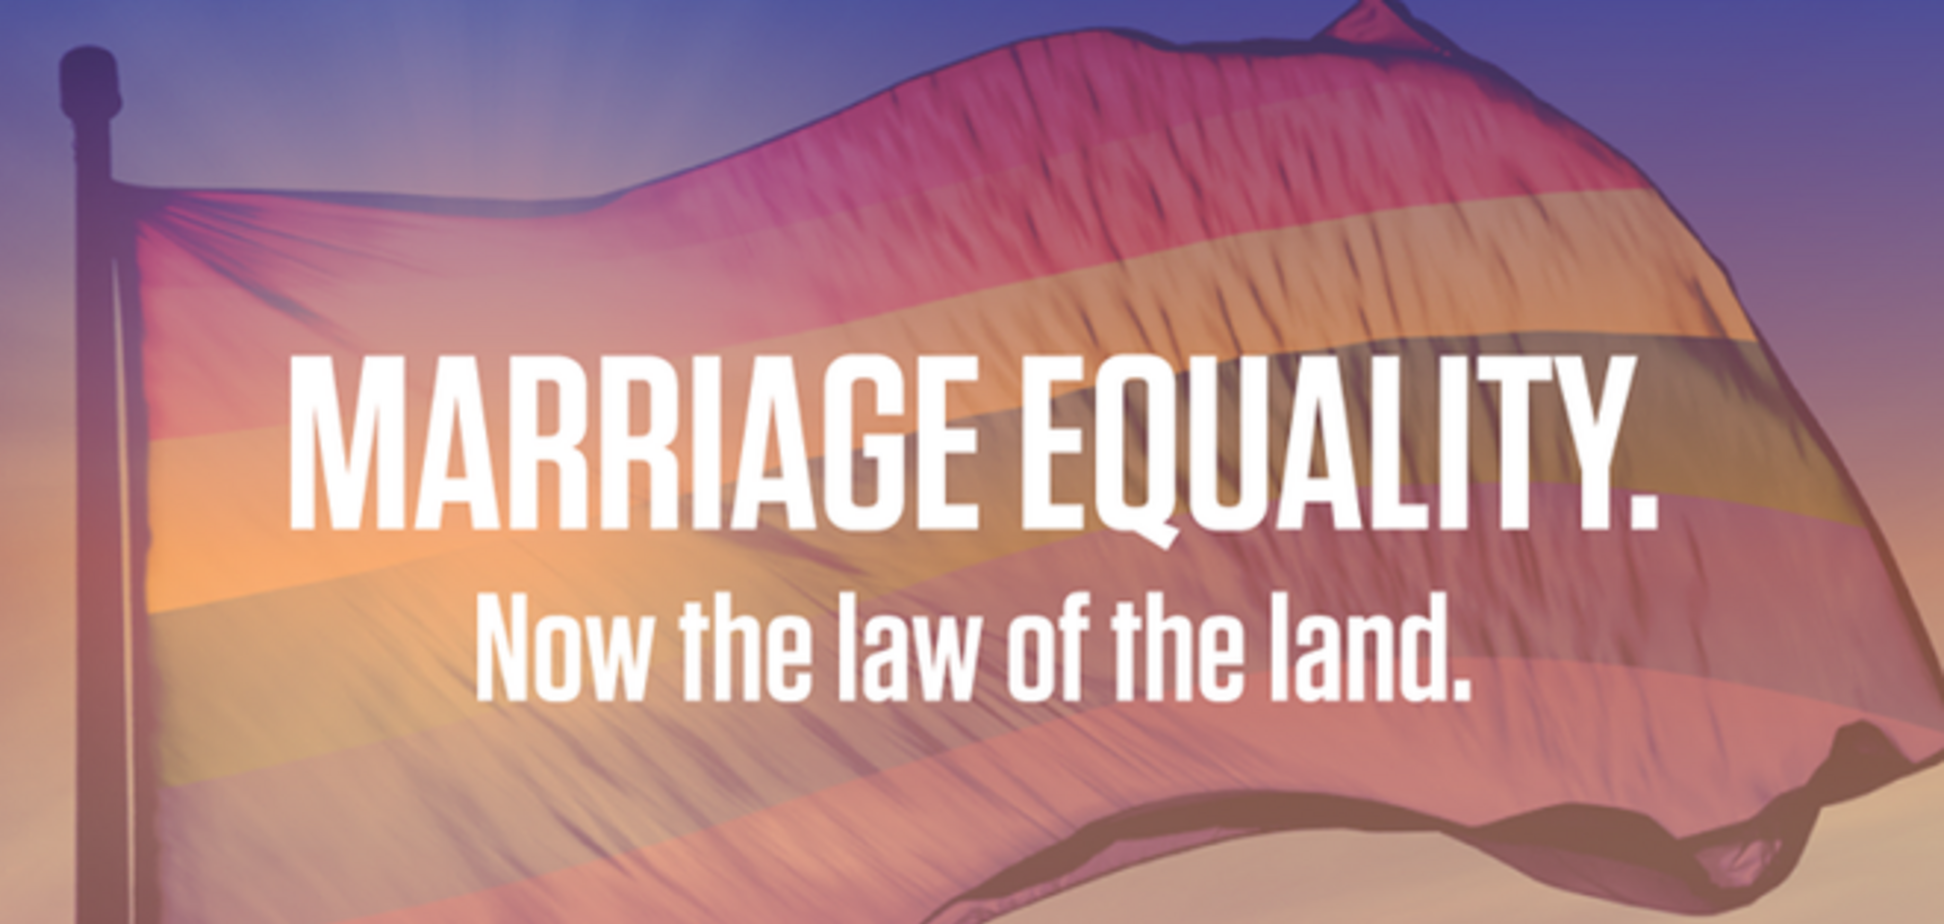 Любовь победила! Обама поддержал легализацию однополых браков в США